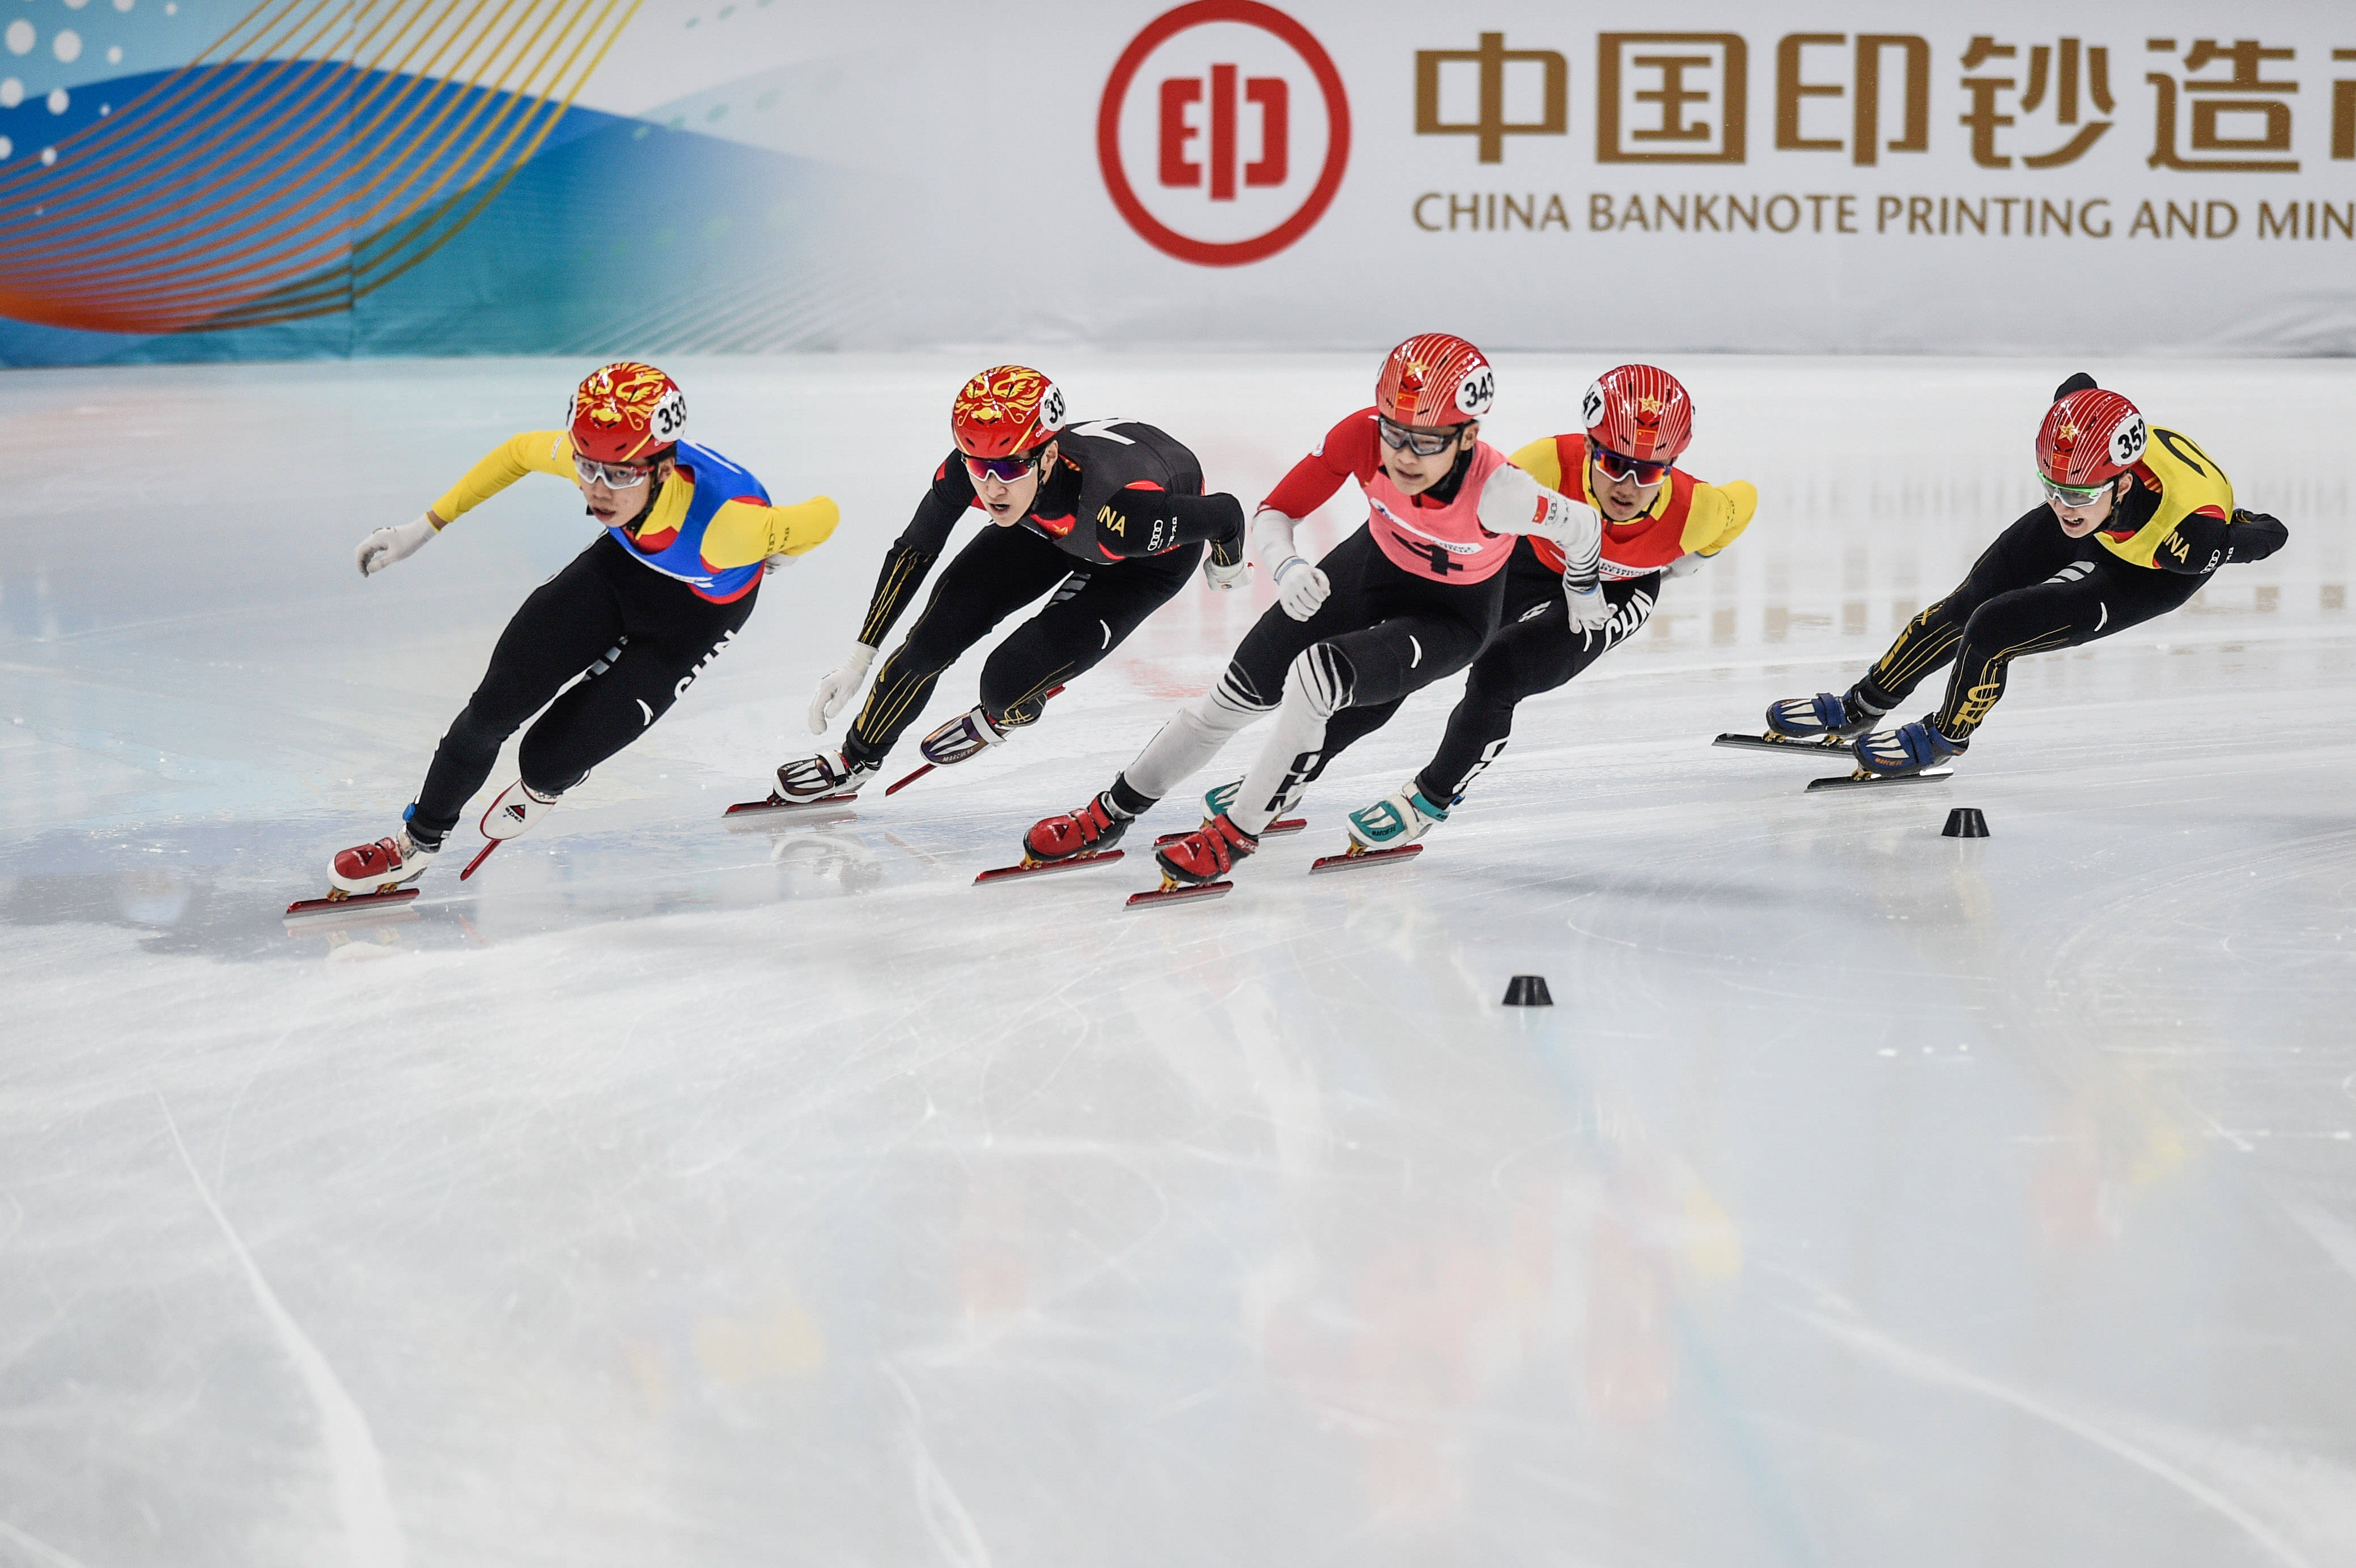 短道速滑——"相约北京"冰上测试活动短道速滑比赛举行